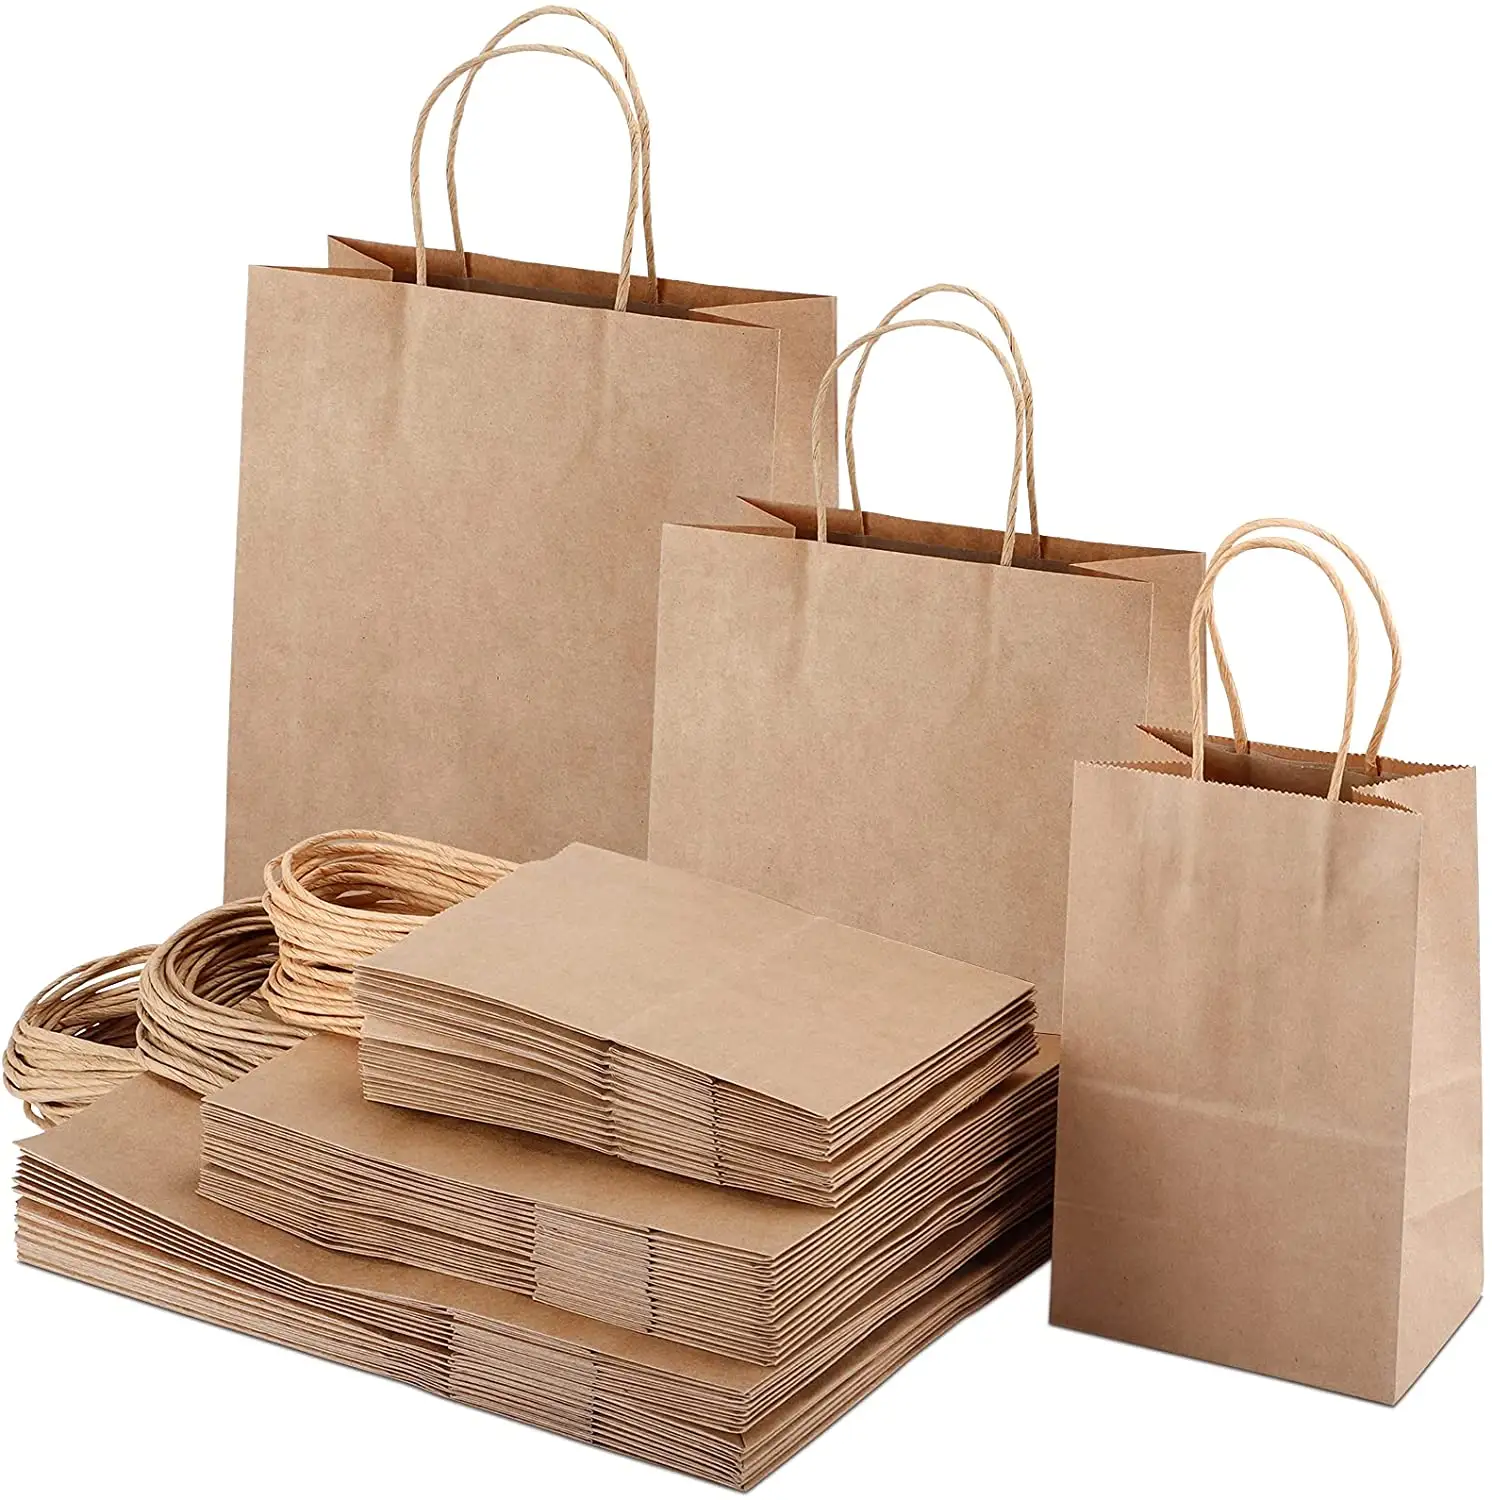 बड़े क्राफ्ट ब्राउन खरीदारी पेपर बैग खाद्य किराने की खरीदारी के लिए हैंडल के साथ